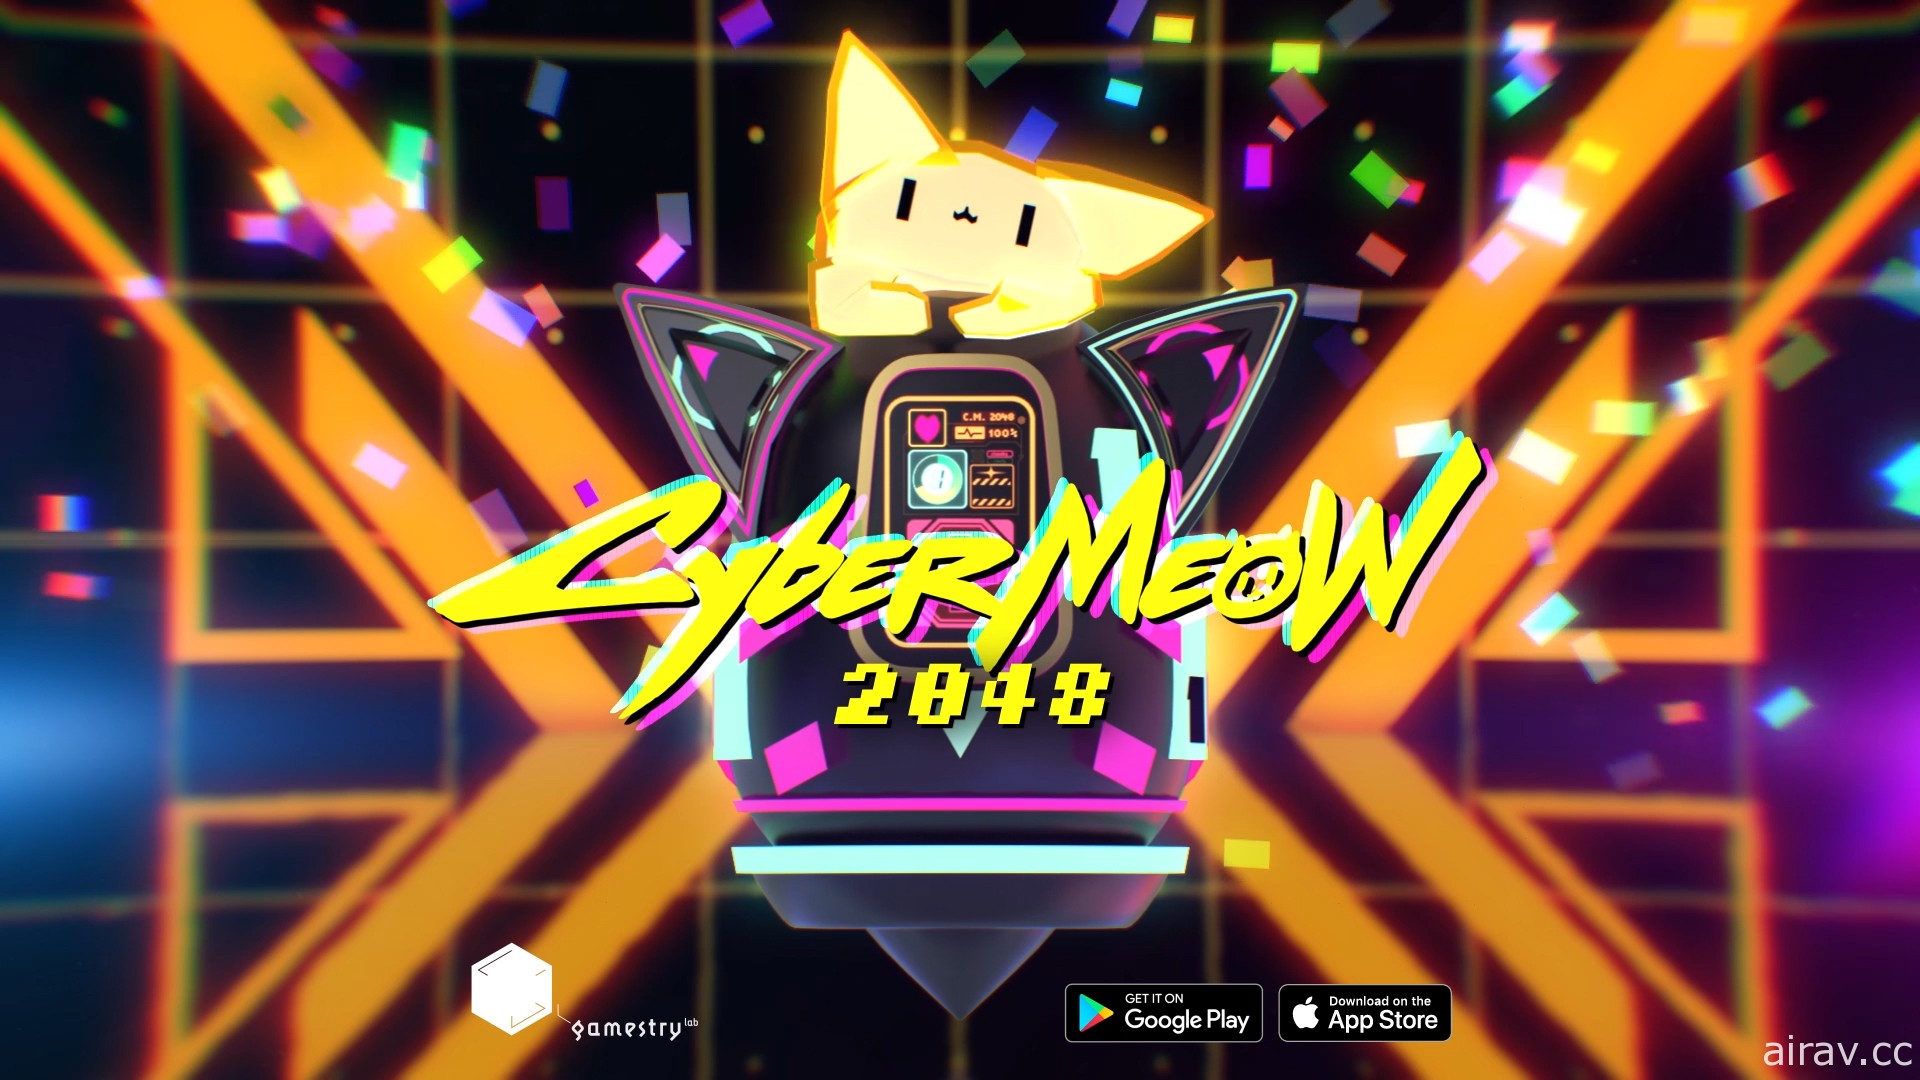 消除解謎遊戲《CyberMeow 2048》正式推出 與電馭貓咪一起拼圖解謎！